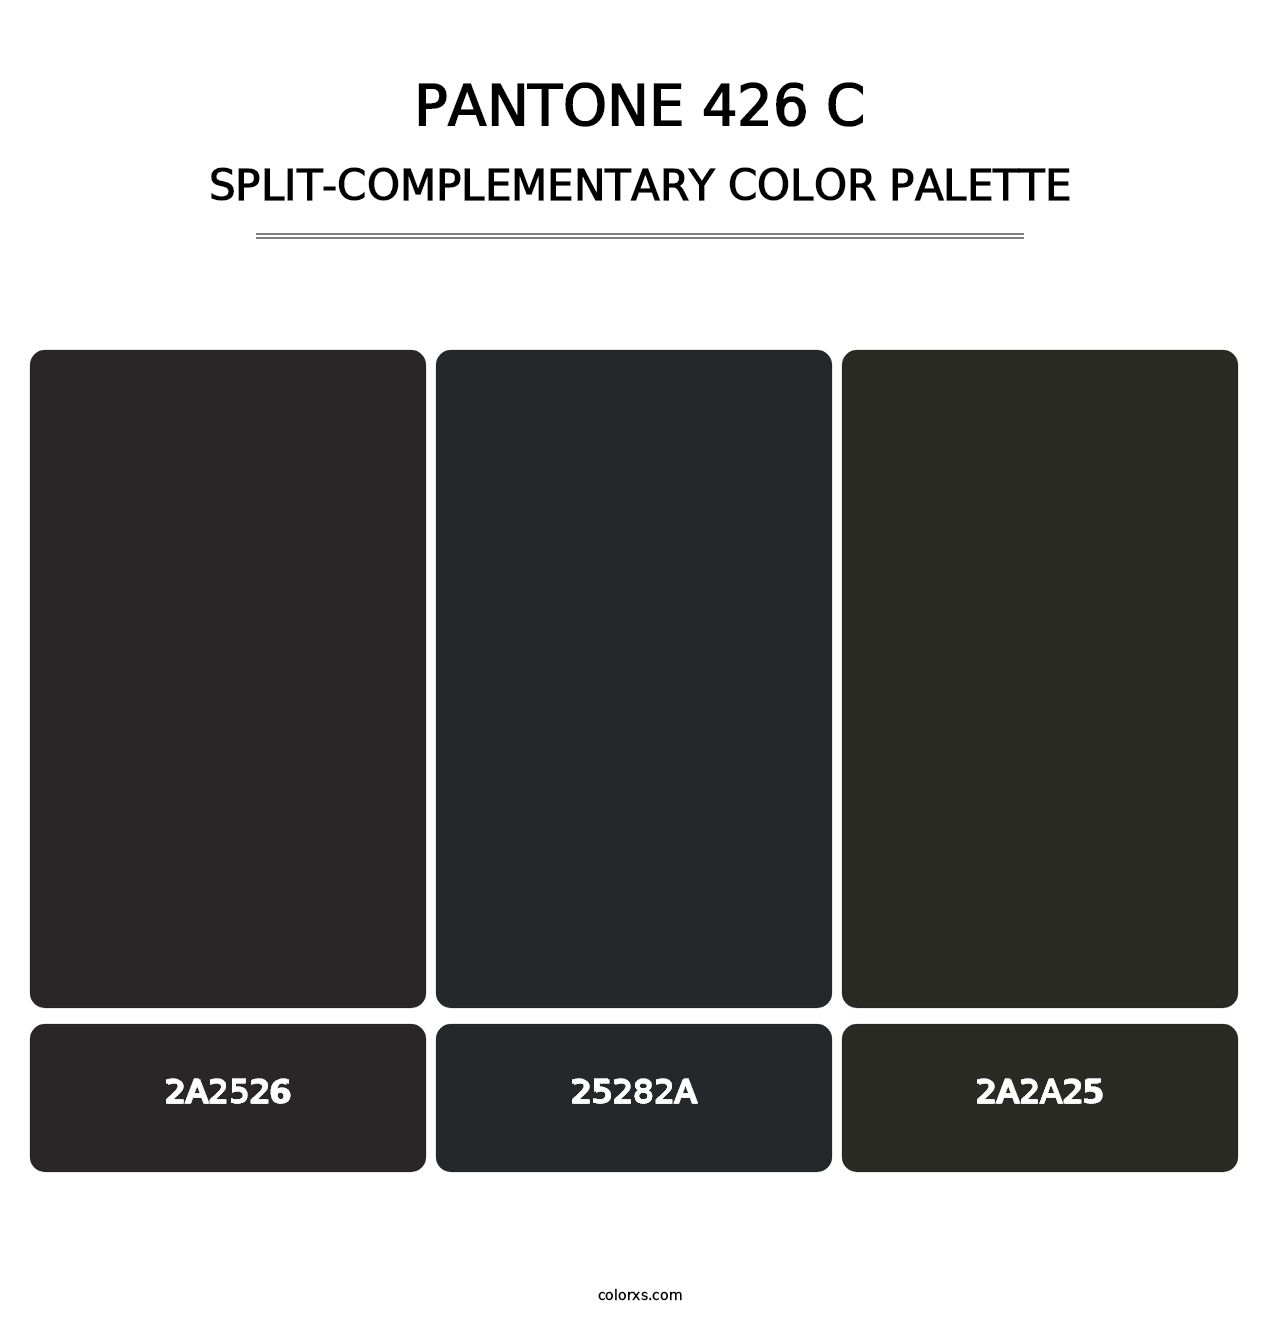 PANTONE 426 C - Split-Complementary Color Palette